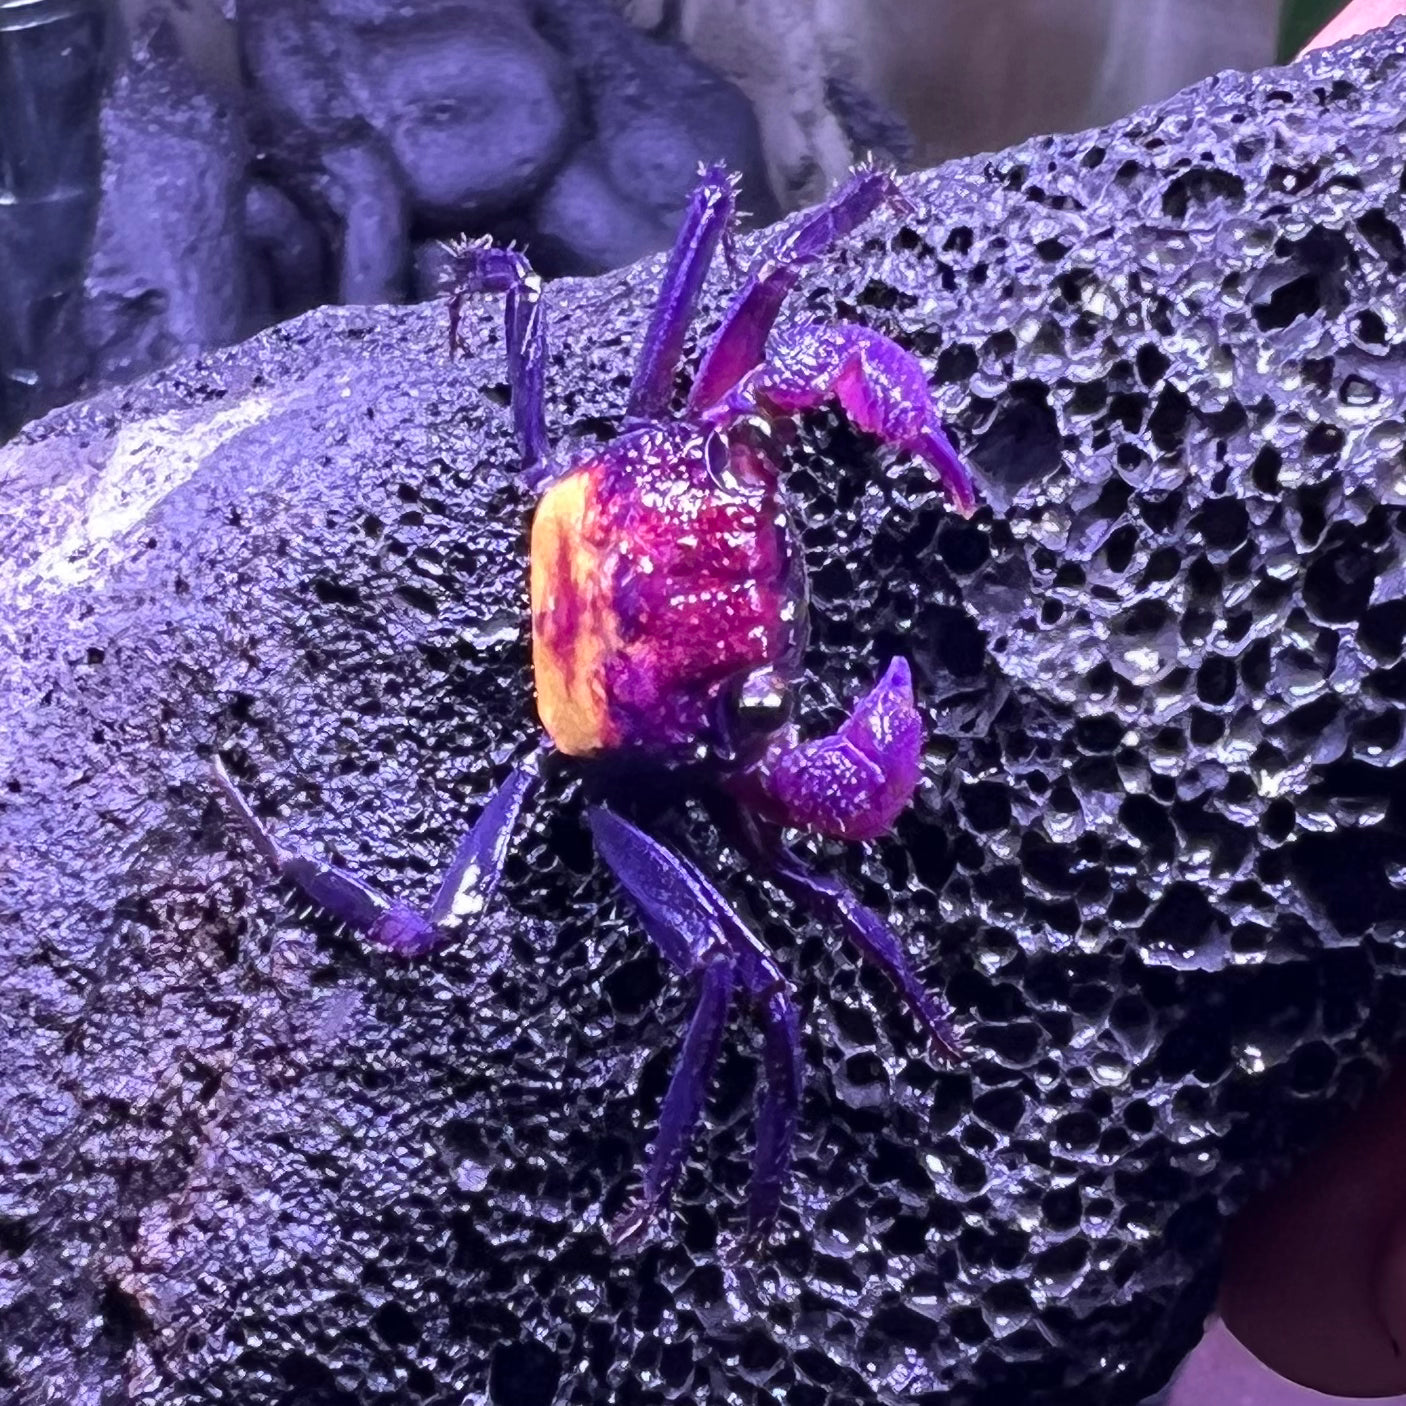 黃紫面惡魔蟹 Vampire Crab ( Geosesarma tricolor )